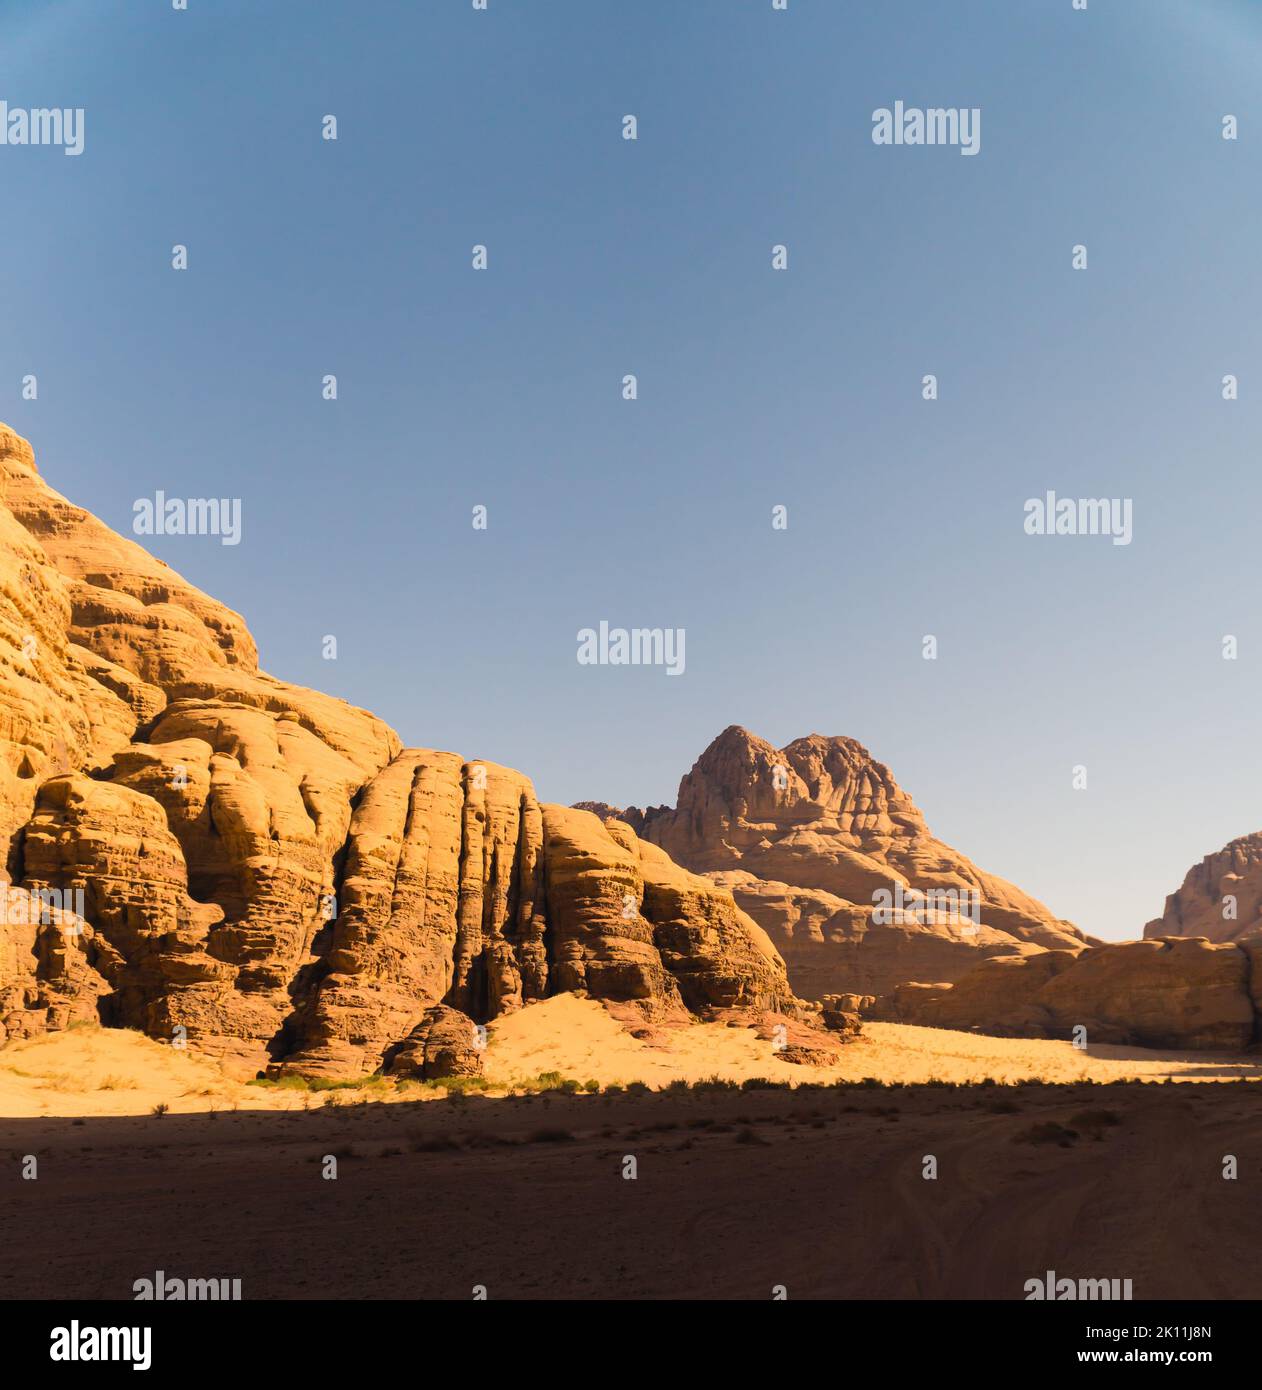 wadi-Rum-Wüste, Jordanien, Naher Osten. Eine der beliebtesten Touristenattraktionen Jordaniens und zieht eine große Anzahl von Touristen aus der ganzen Welt an. Hochwertige Fotos Stockfoto